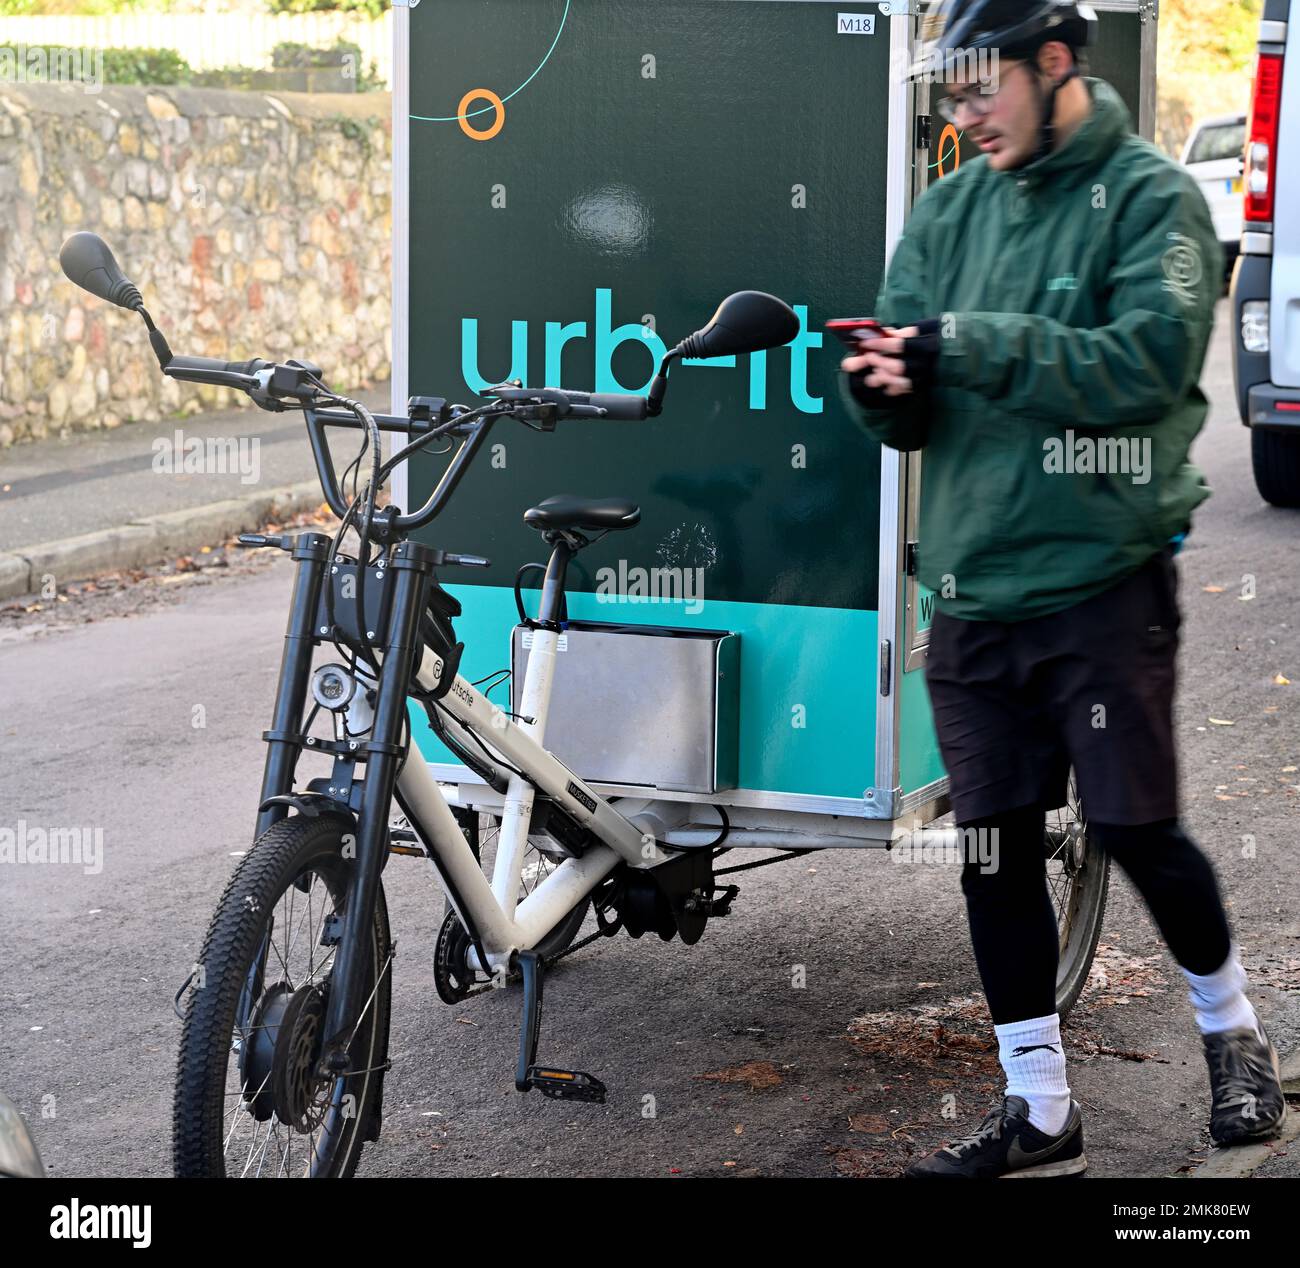 Vélo de transport et cycliste utilisés pour la livraison de colis par vélo coursier urb-it, Angleterre Banque D'Images